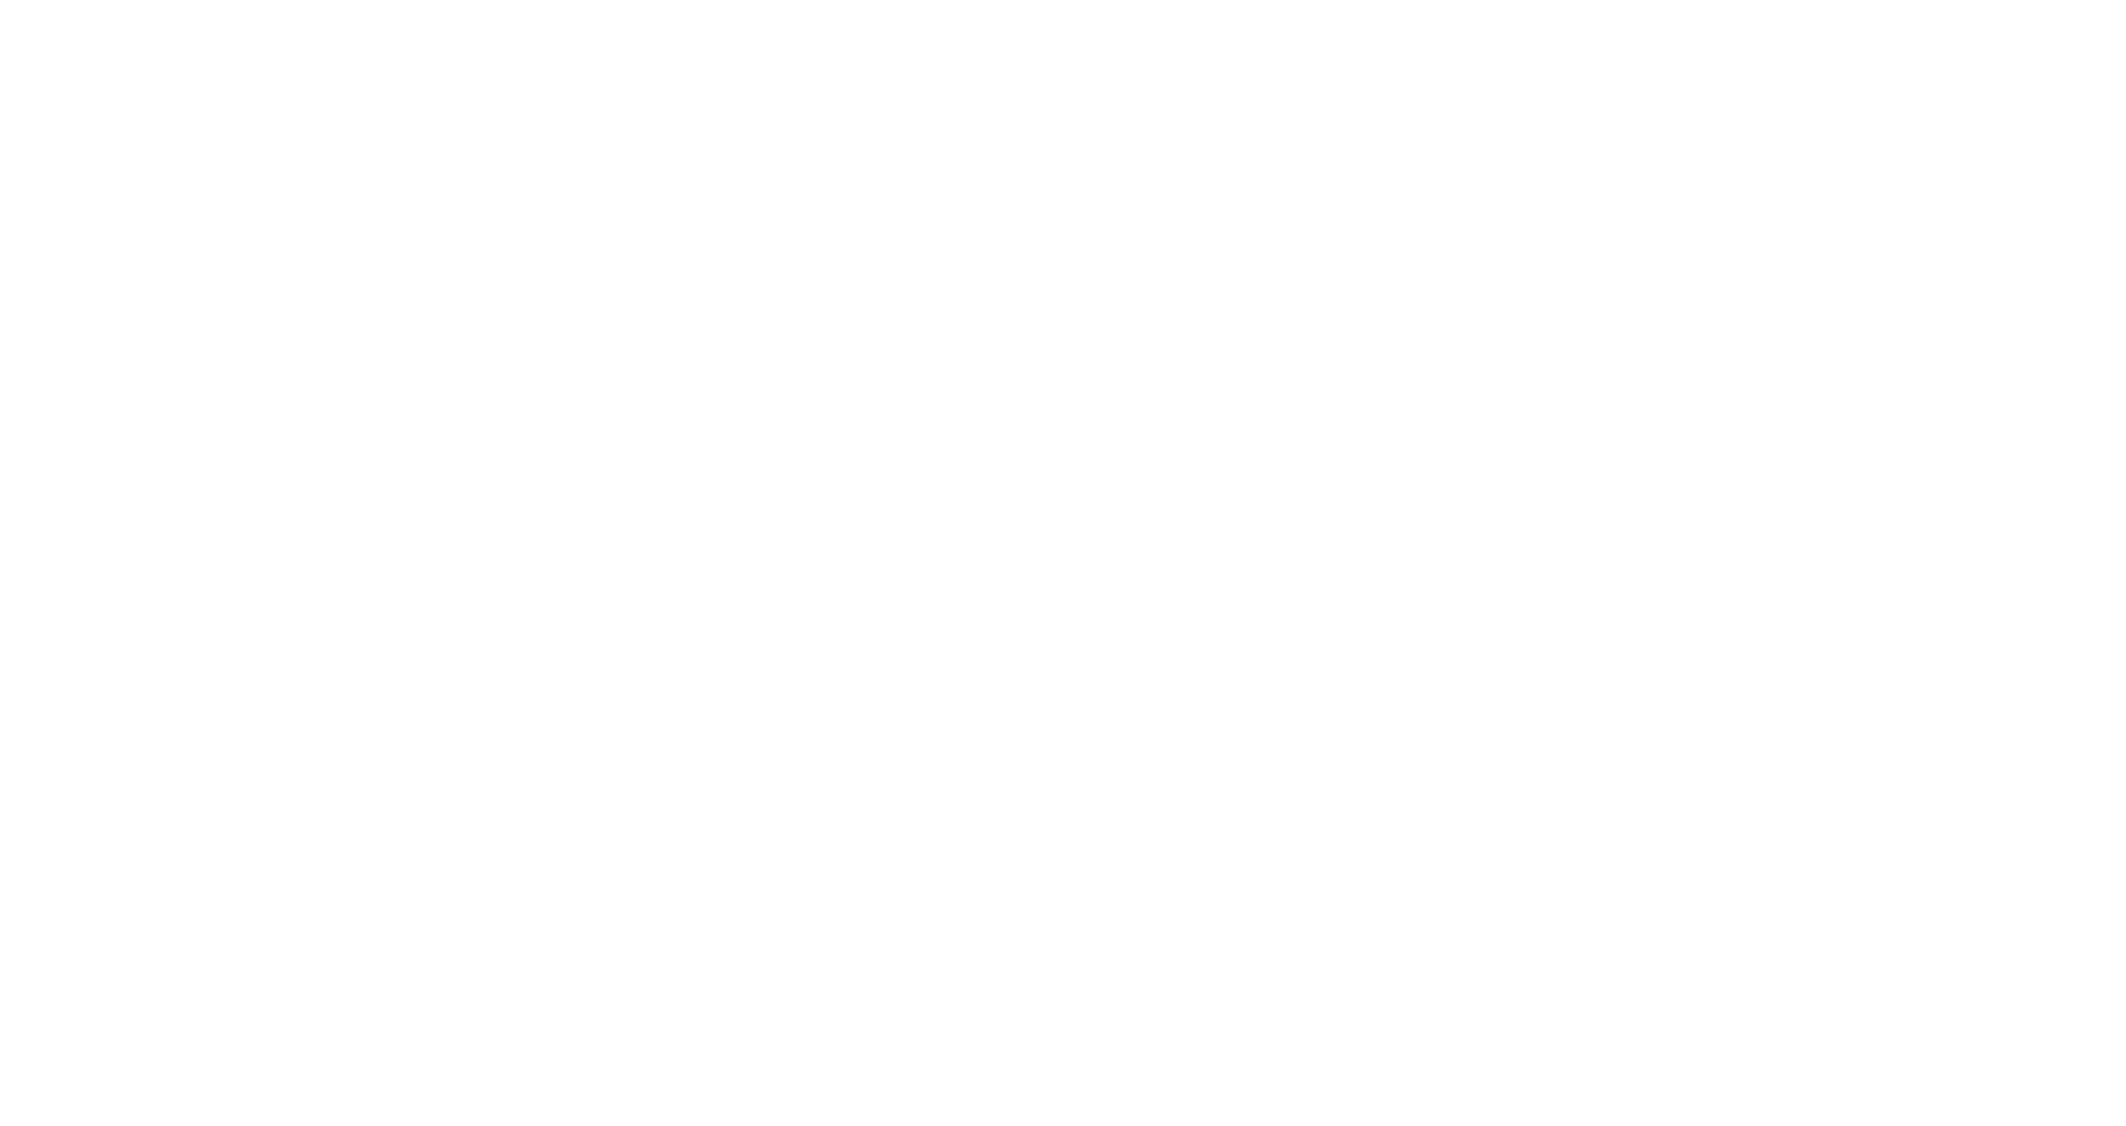 Primary Data